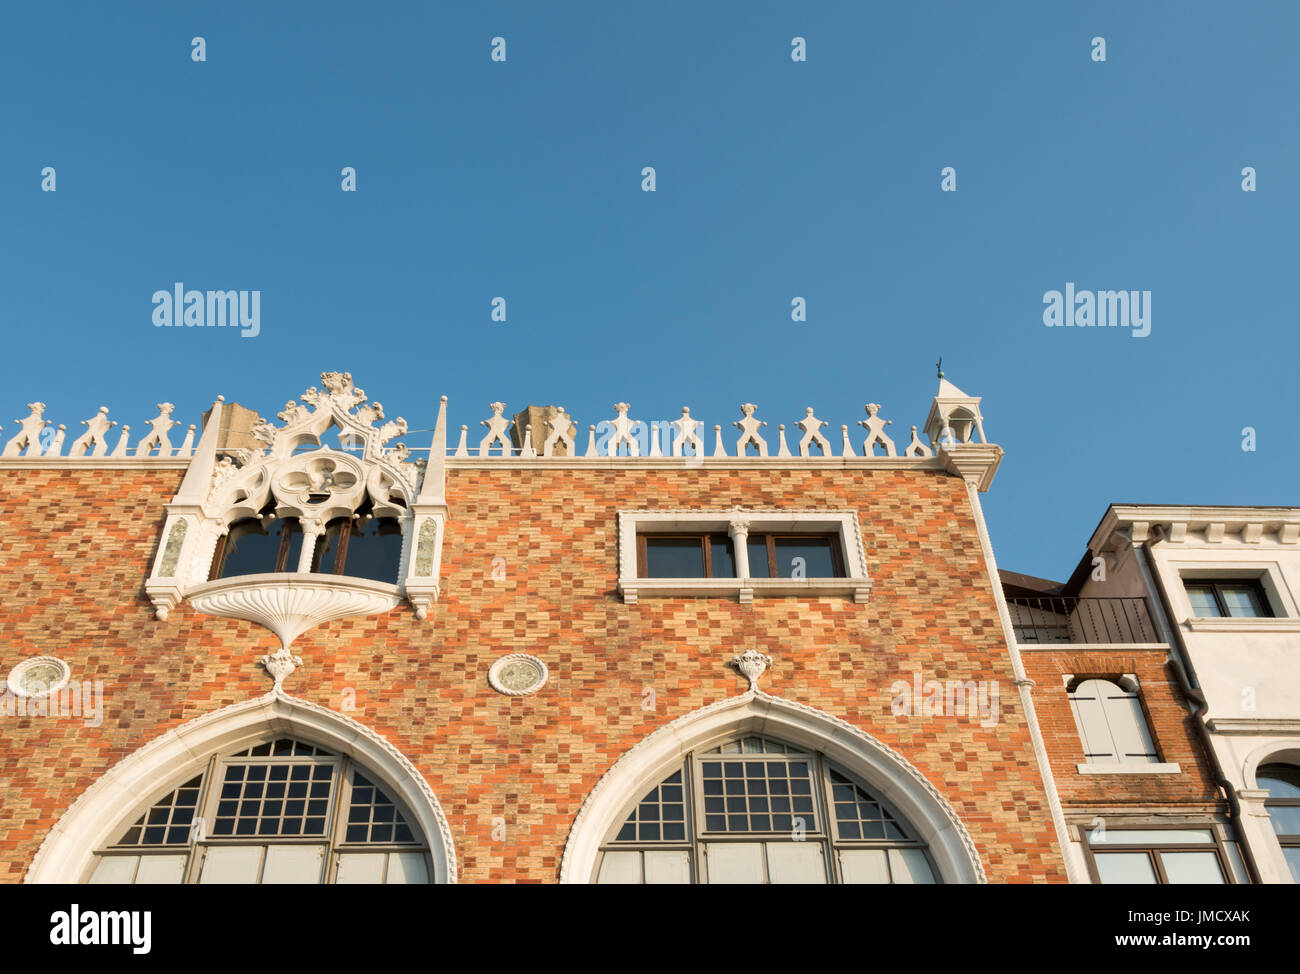 Sehr attraktive Gebäude, ein schönes Beispiel der venezianischen Architektur auf der Insel Giudecca. Stockfoto